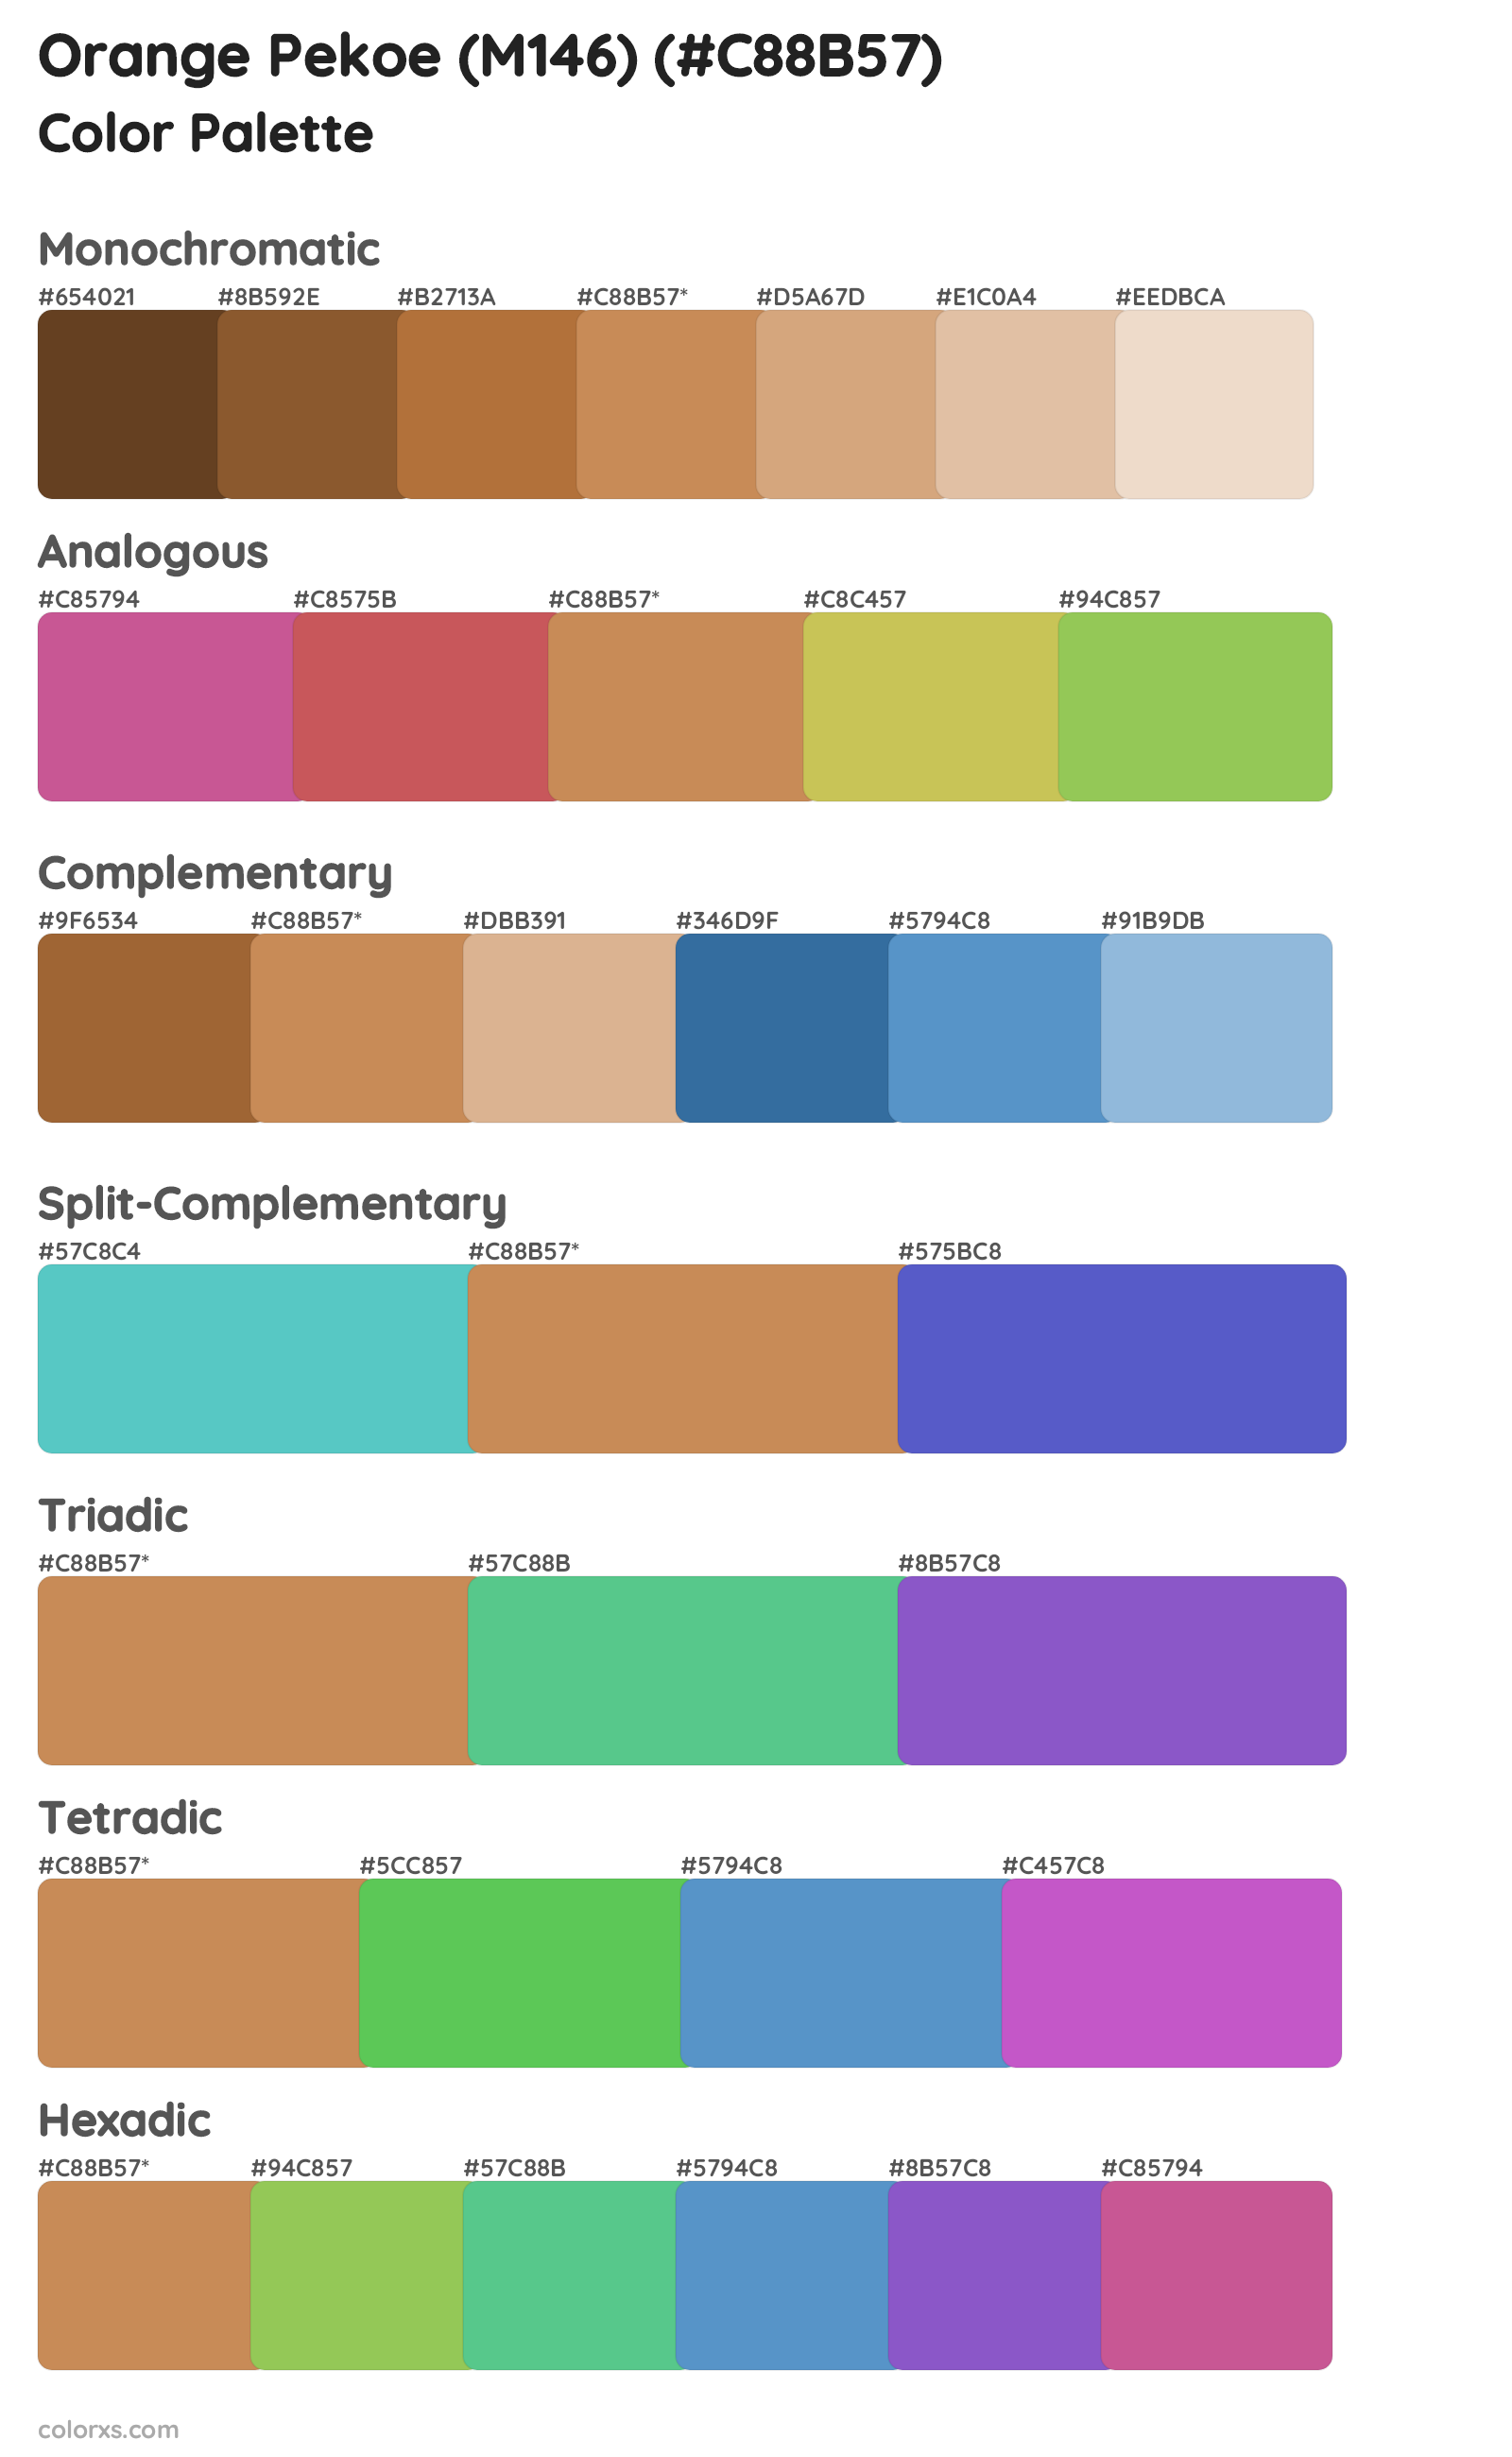 Orange Pekoe (M146) Color Scheme Palettes